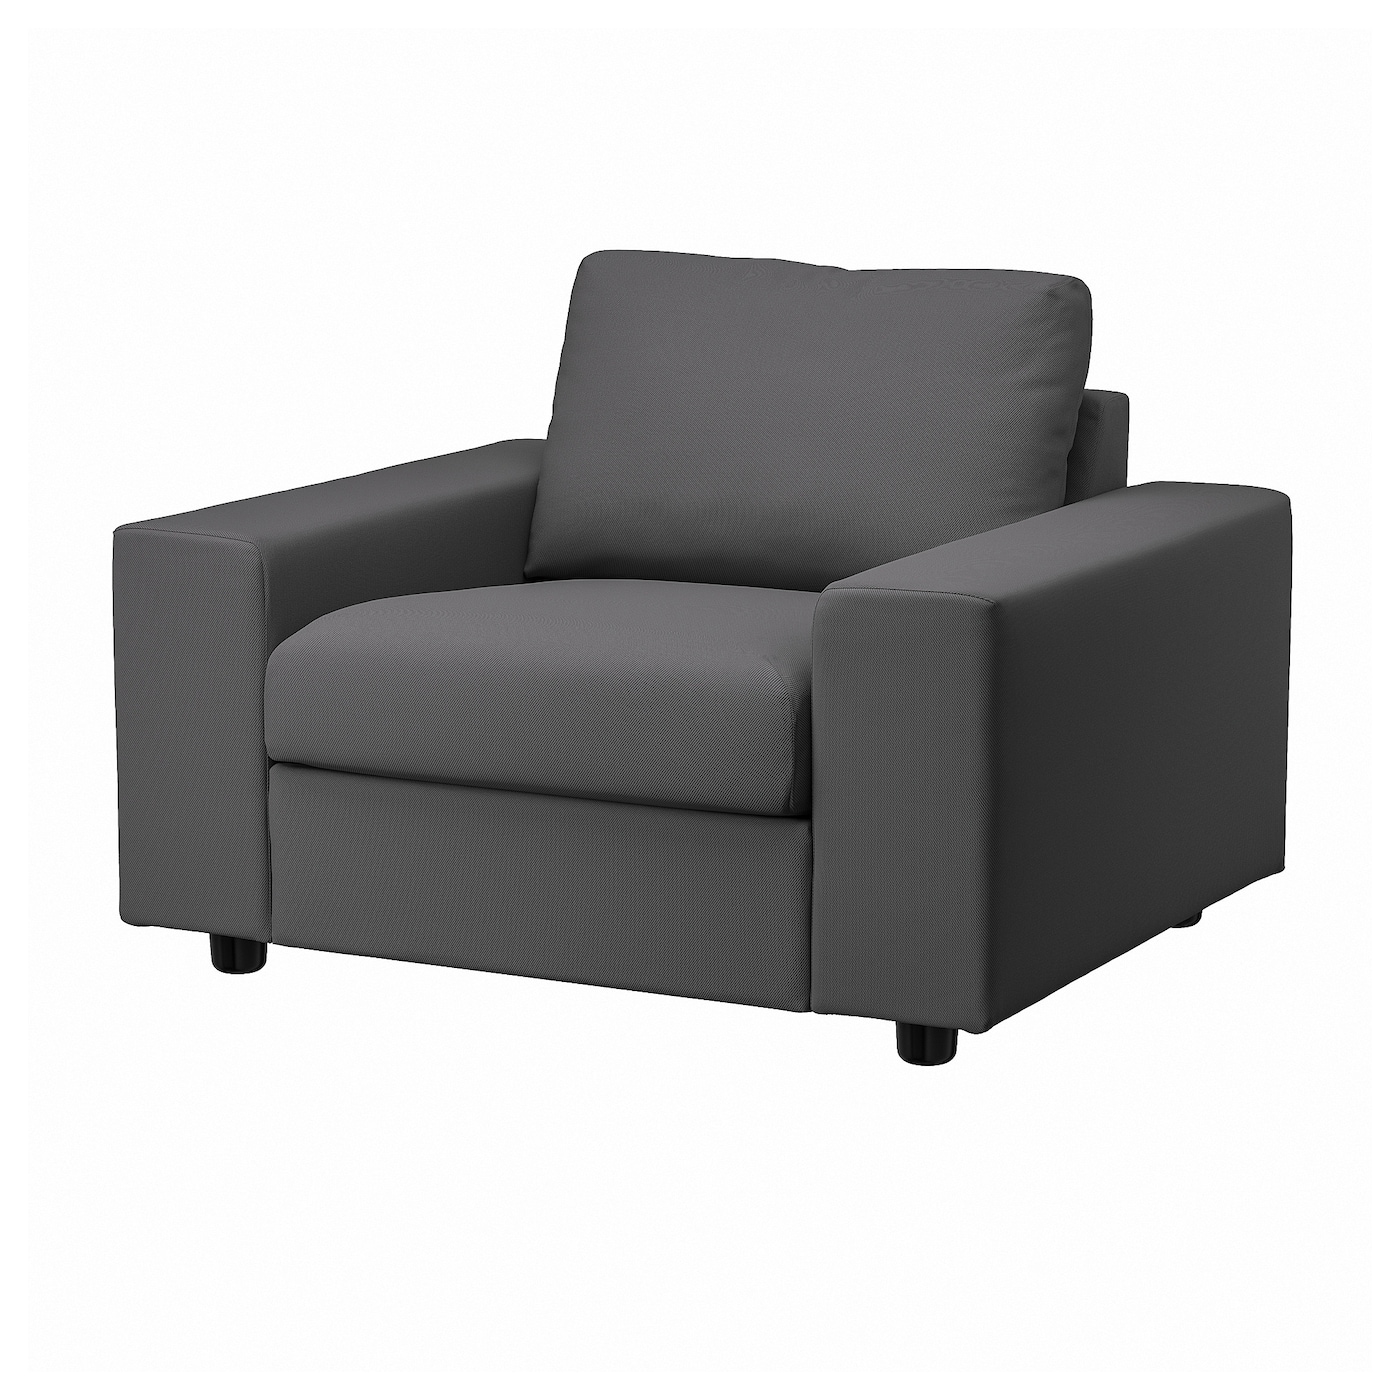 ВИМЛЕ Кресло, с широкими подлокотниками/Халларп серый VIMLE IKEA кресло мягкое тутси зайчик серый